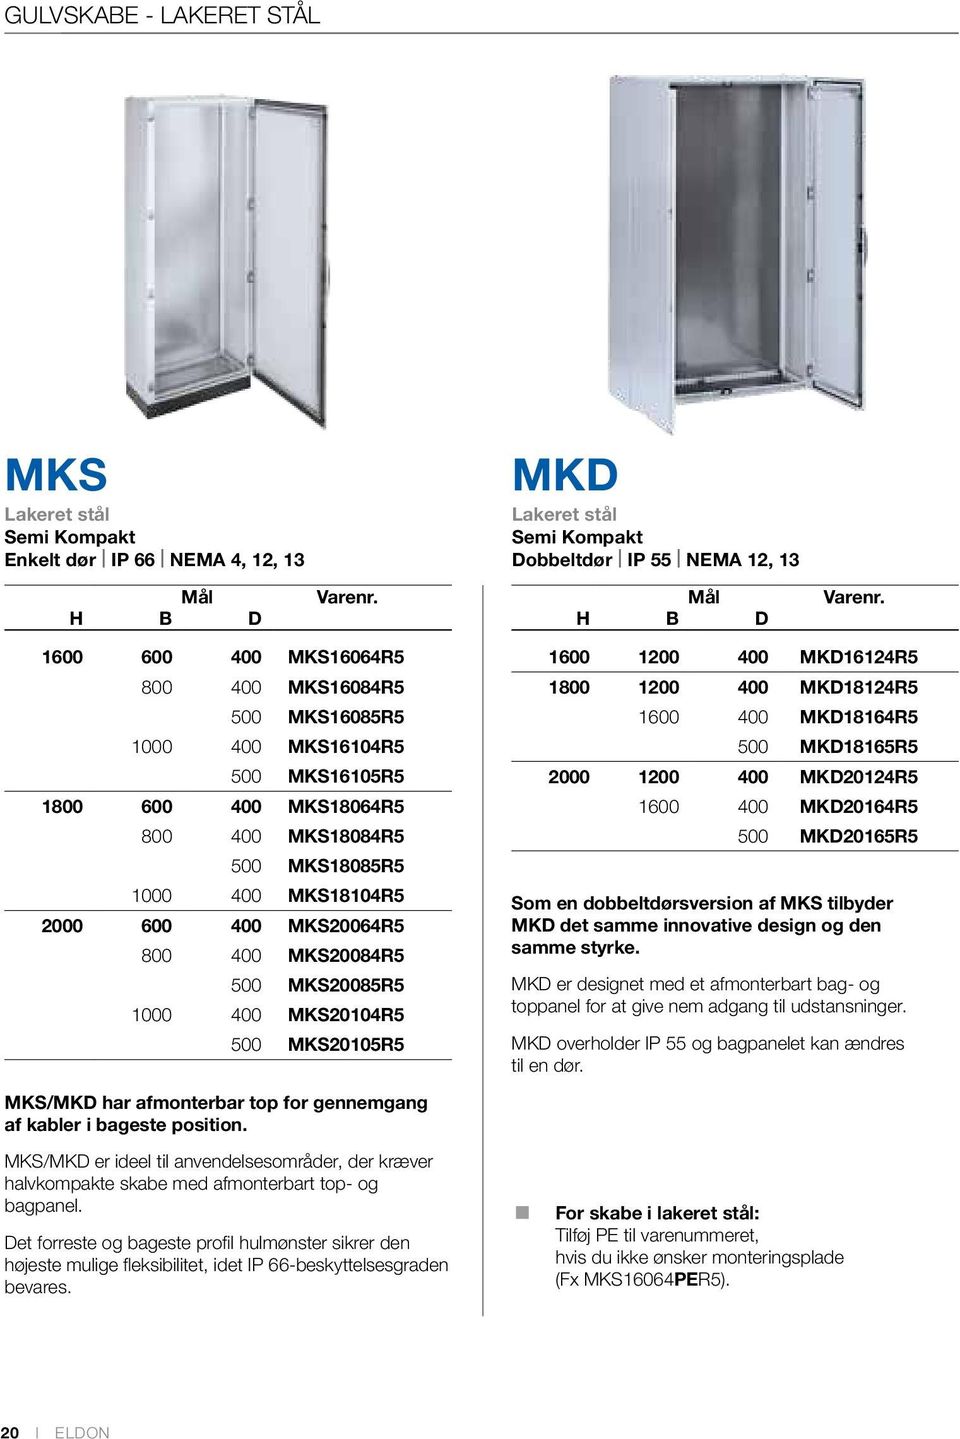 for gennemgang af kabler i bageste position. MKS/MKD er ideel til anvendelsesområder, der kræver halvkompakte skabe med afmonterbart top- og bagpanel.